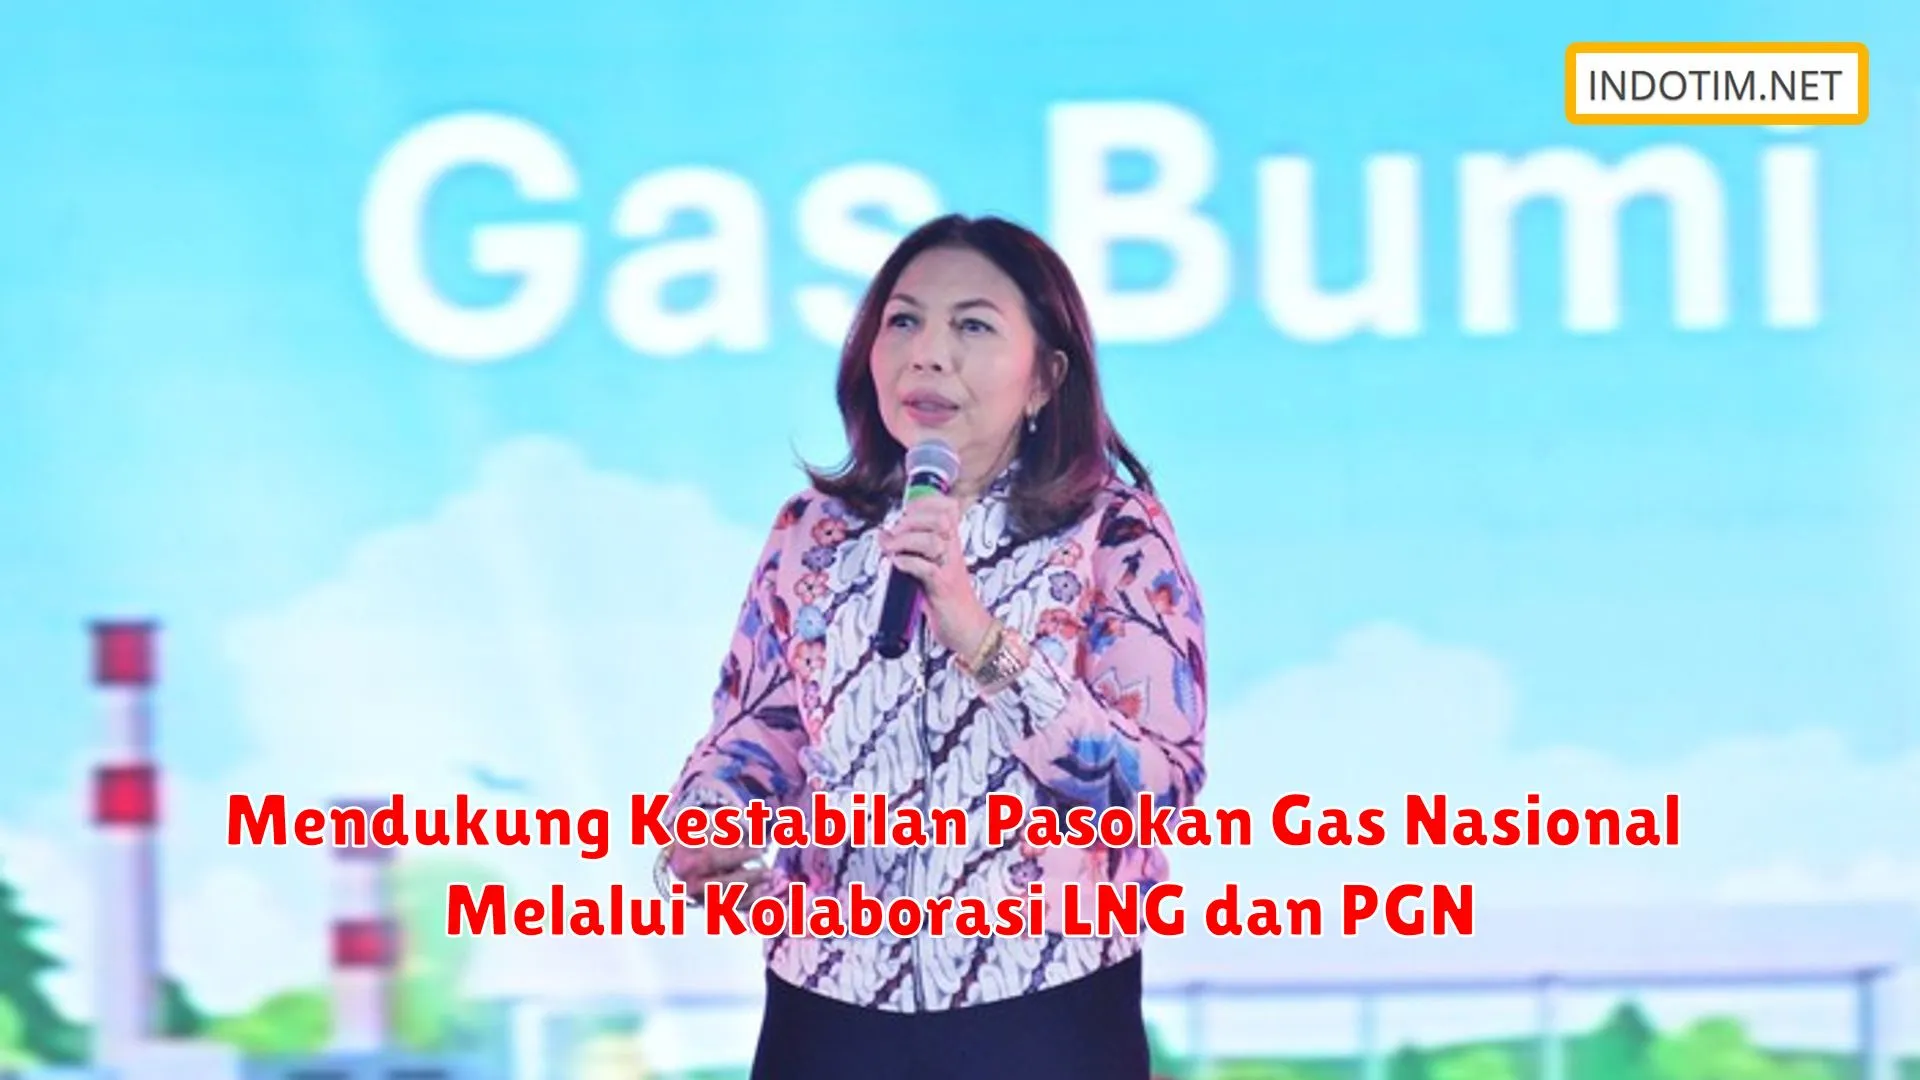 Mendukung Kestabilan Pasokan Gas Nasional Melalui Kolaborasi LNG dan PGN